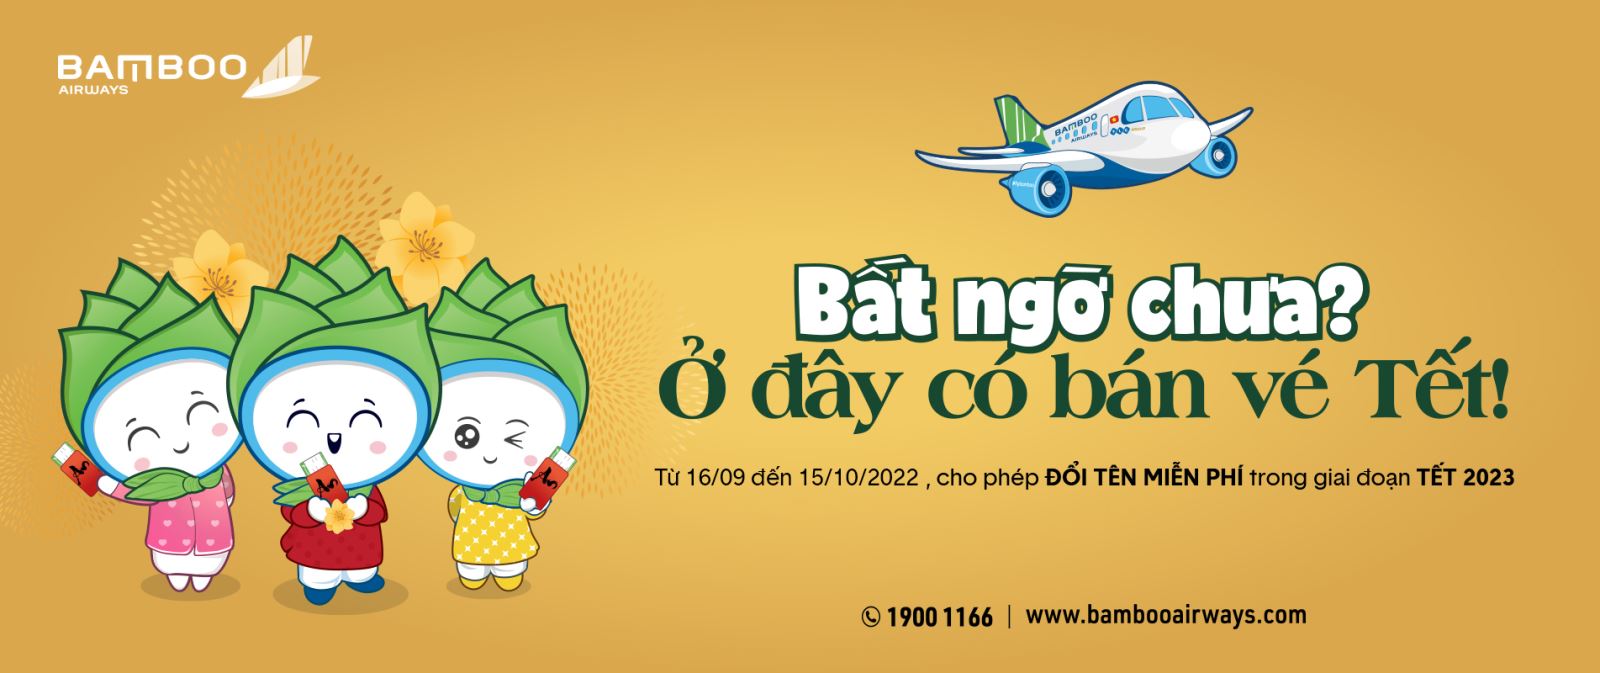 Đổi tên miễn phí - ăn Tết hết ý cùng Bamboo Airways